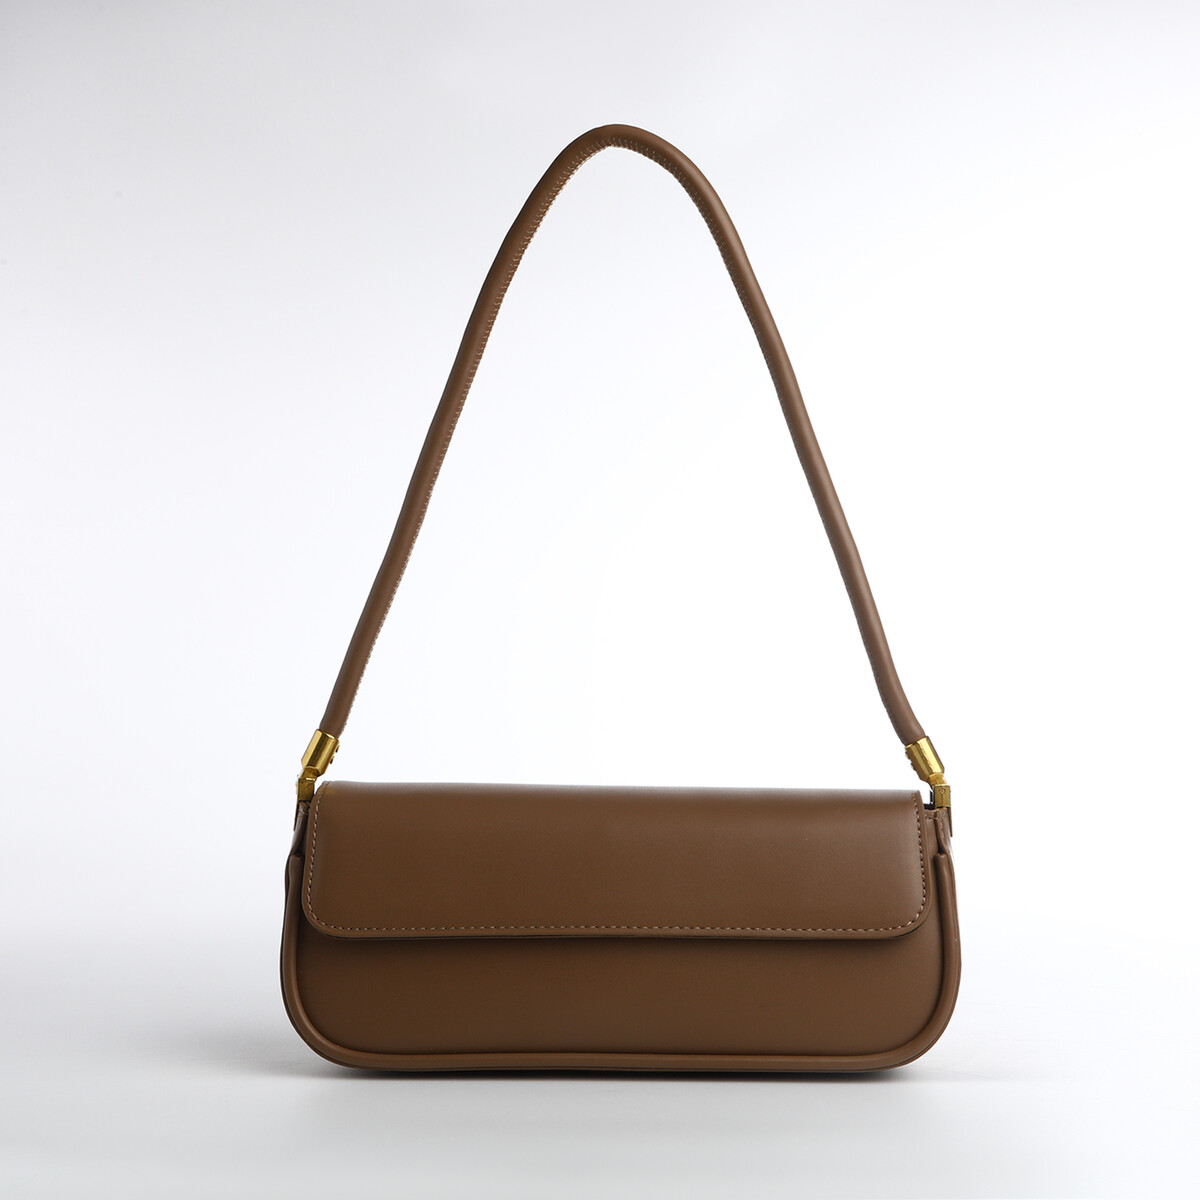 Сумка женская, багет, на магните, цвет коричневый сумка мешок женская на магните косметичка коричневый